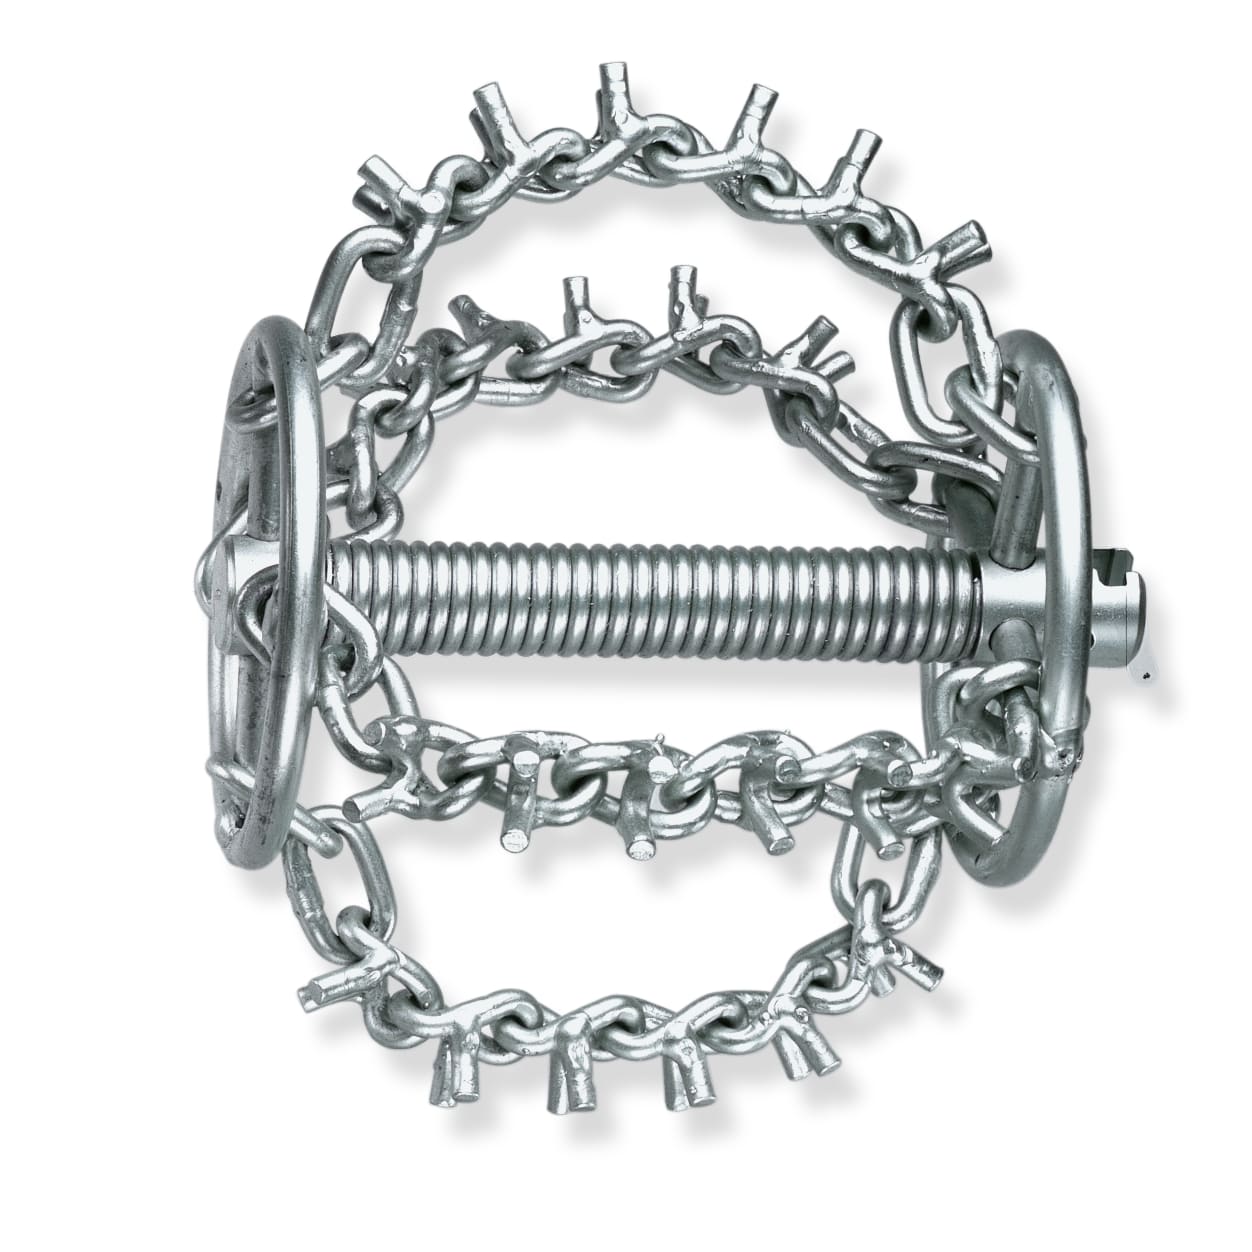 ROTHENBERGER Верижен инструмент за каналопочистване с шипове 4 вериги и пръстен 32 мм (72341)